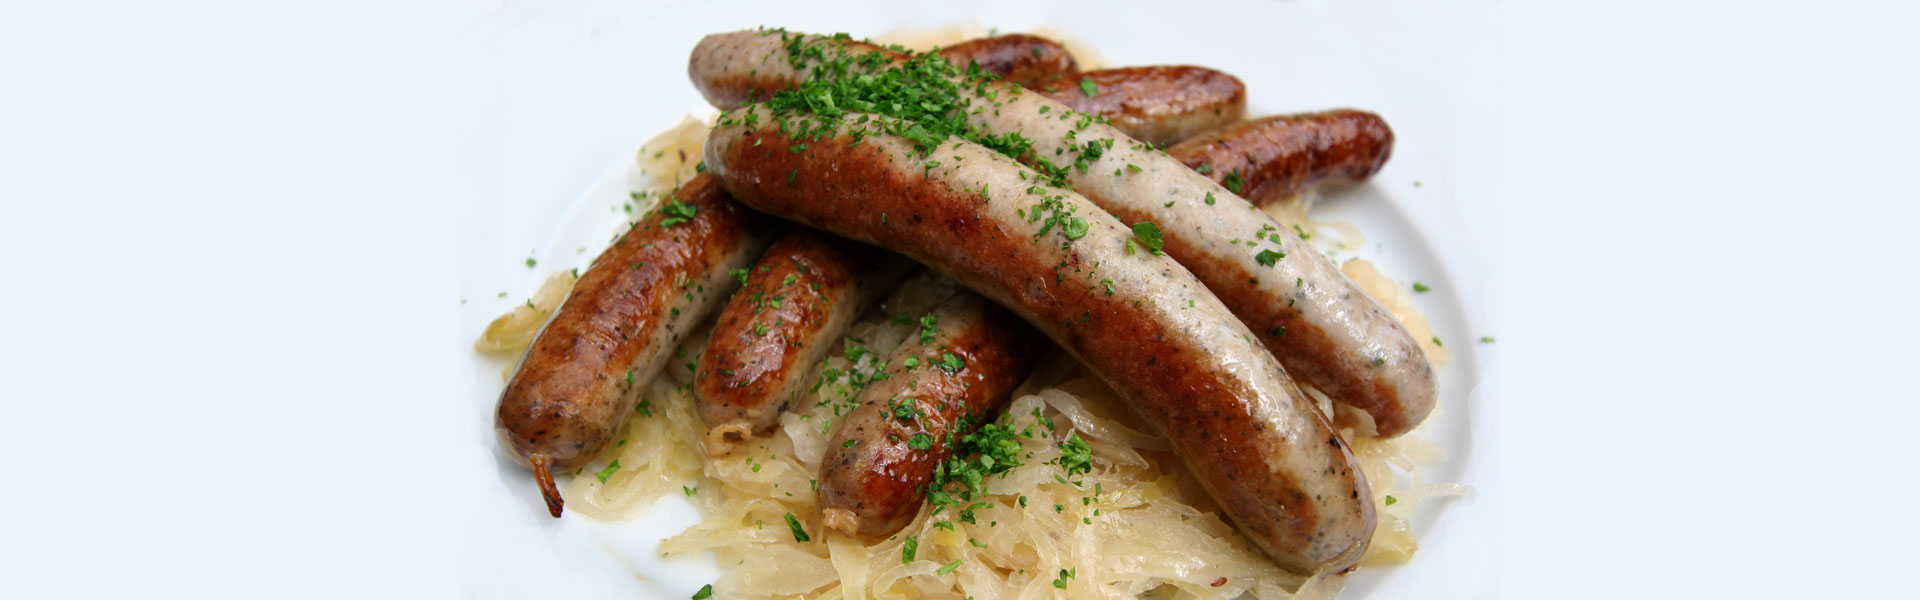 German Sausages With Sauerkraut